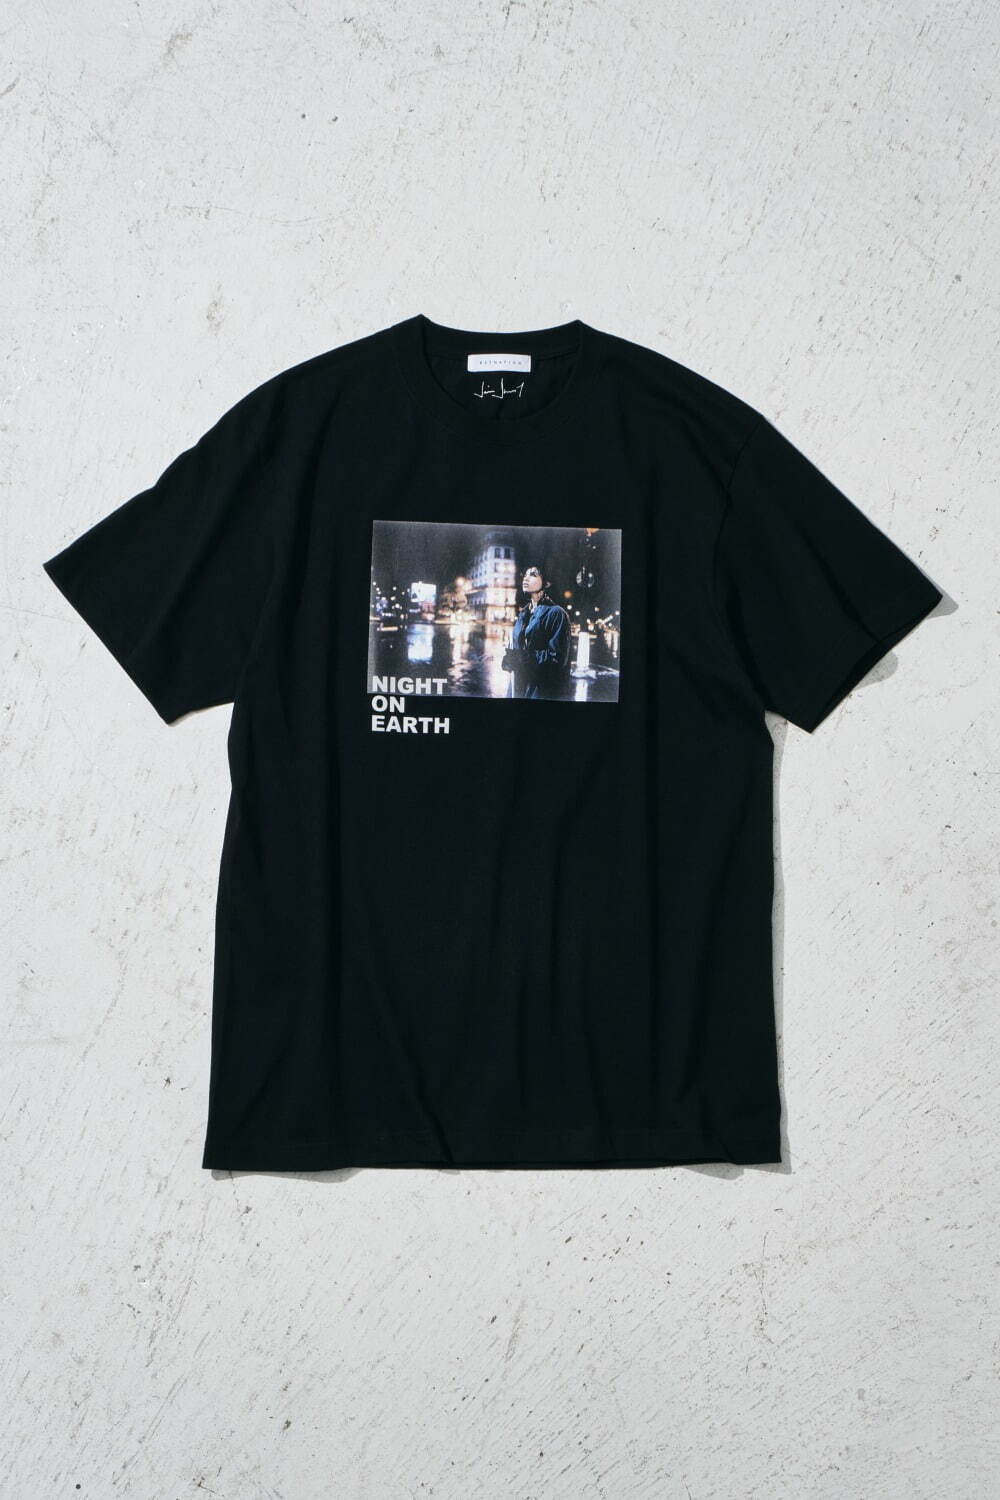 『ナイト・オン・ザ・プラネット』Tシャツ 9,900円